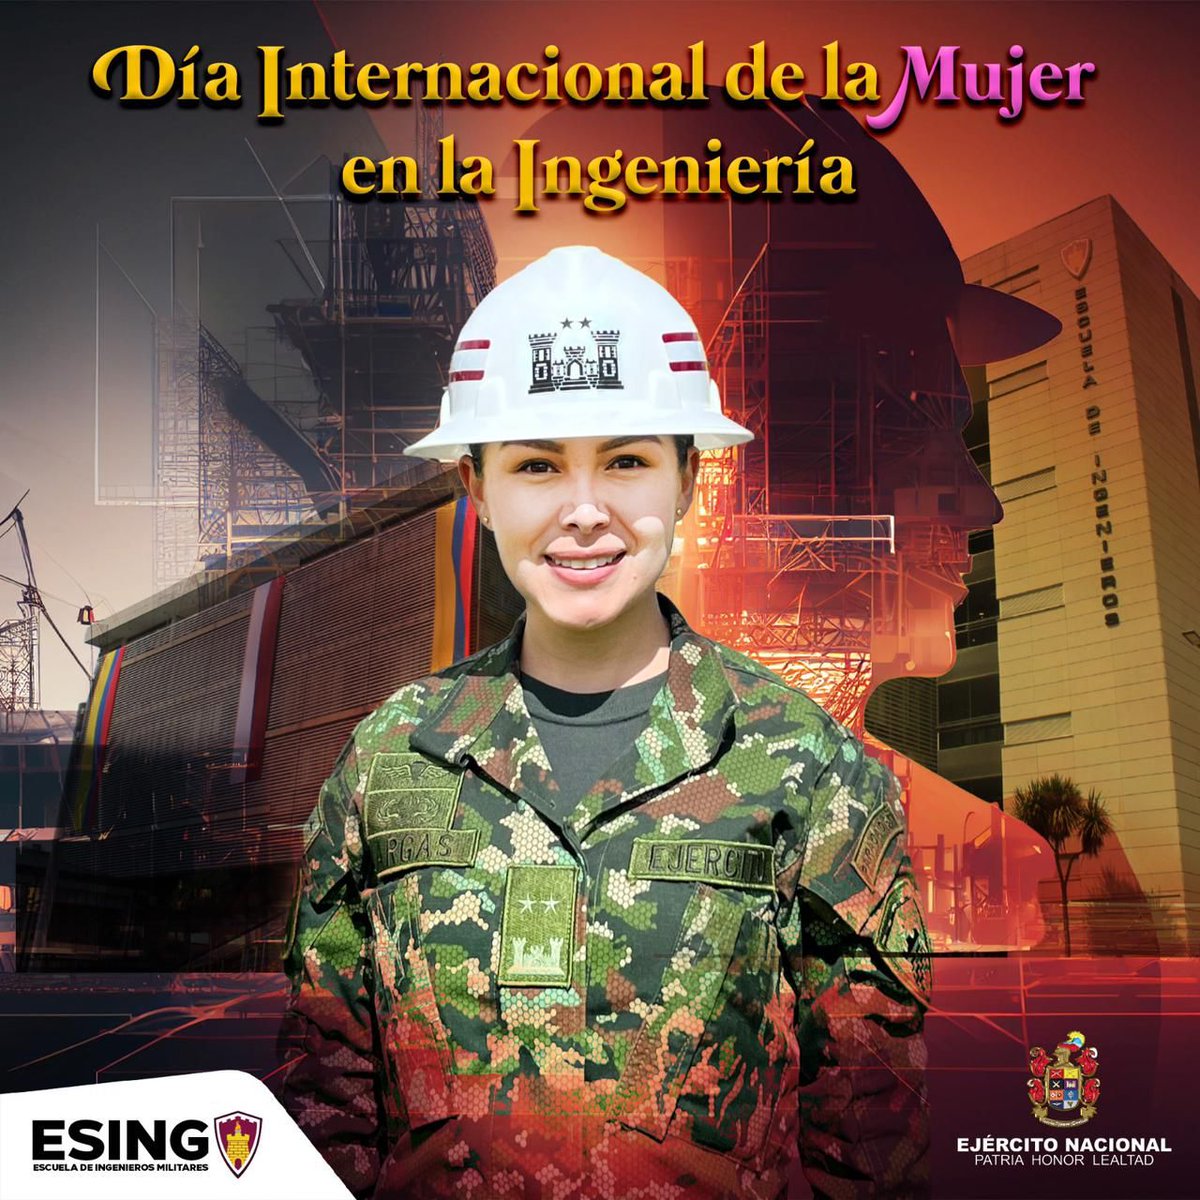 ¡Hoy es el Día Internacional de la Mujer en la Ingeniería!

Desde la Escuela de Ingenieros Militares hacemos un homenaje a las ingenieras que desafían límites, rompen estereotipos y construyen un mundo mejor con su talento y creatividad.
Gracias por inspirarnos

#EducaciónMilitar